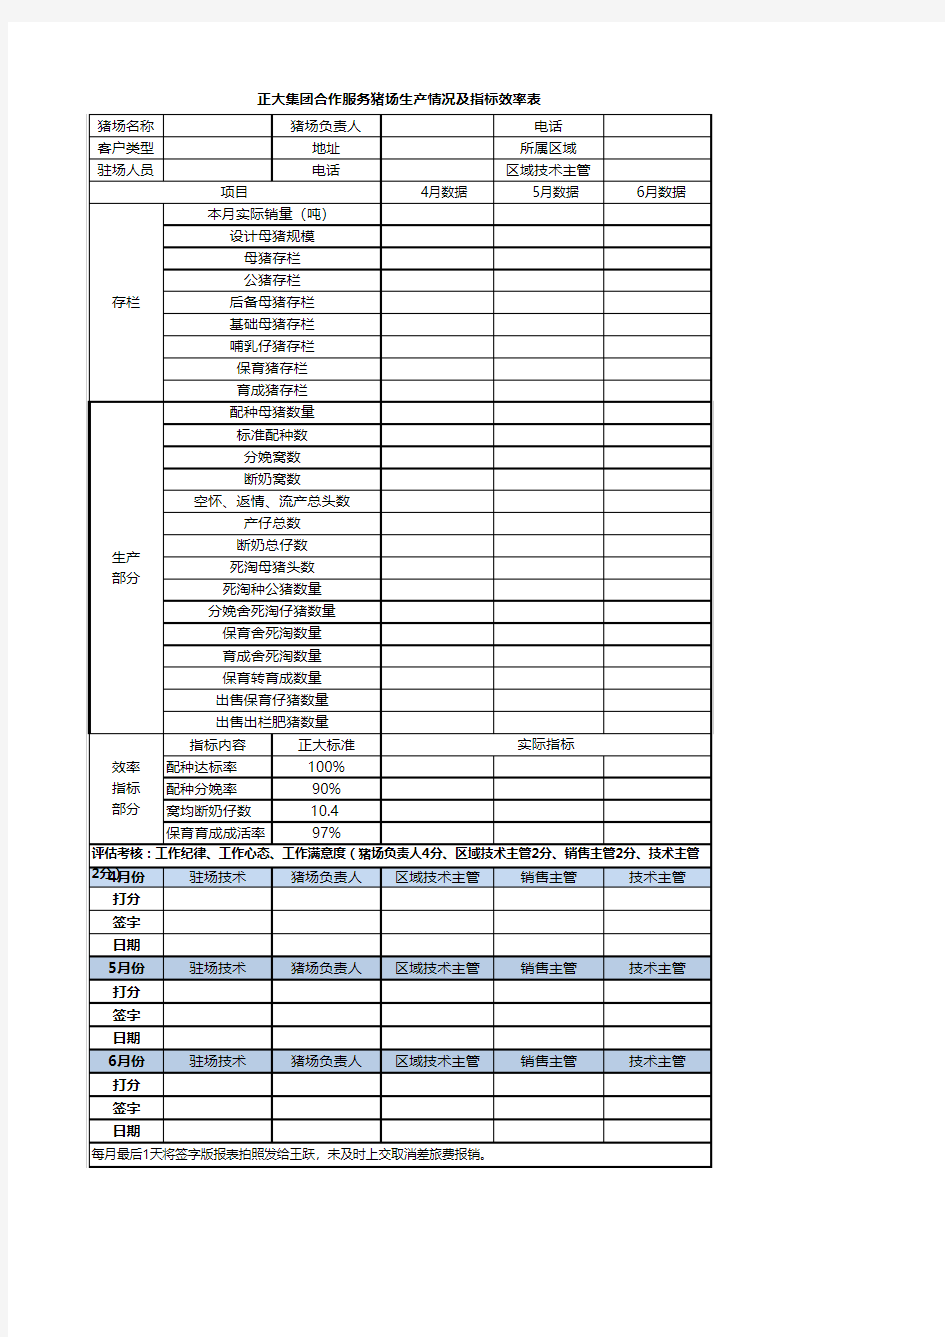 2016年锦州猪场技术服务人员考核用表 -打印版